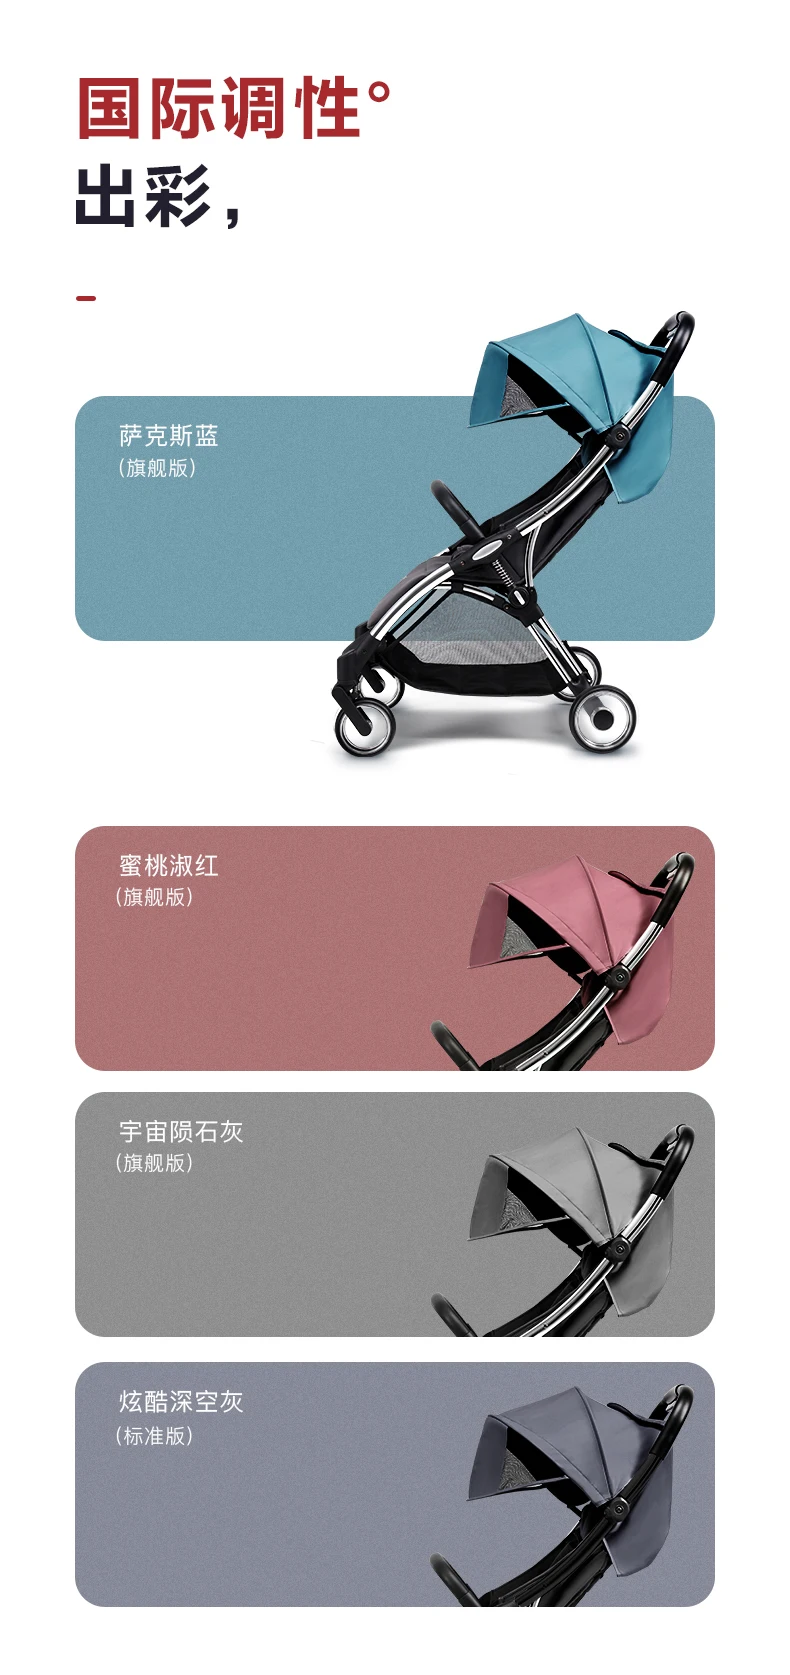 Легкая детская коляска весом 6 кг может сидеть и лежать сложить четыре колеса с подшипником Ширина сиденья 34 см можно садиться на самолет коляски